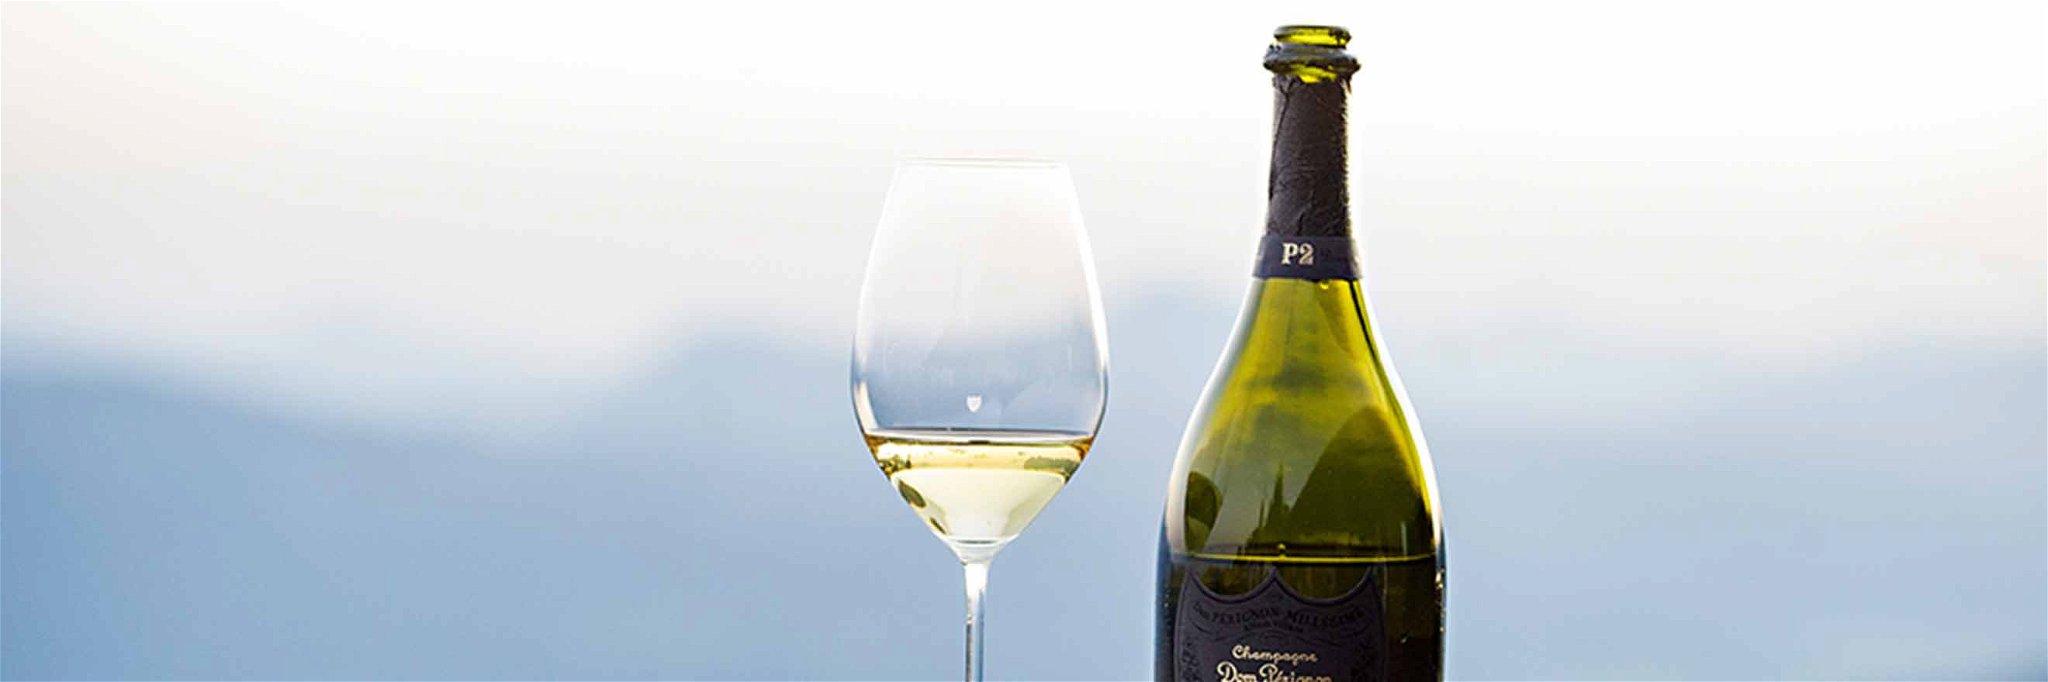 Das neue Champagner-Weinglas entstand aus einer Kooperation von Riedel und dem Haus Dom Pérignon.